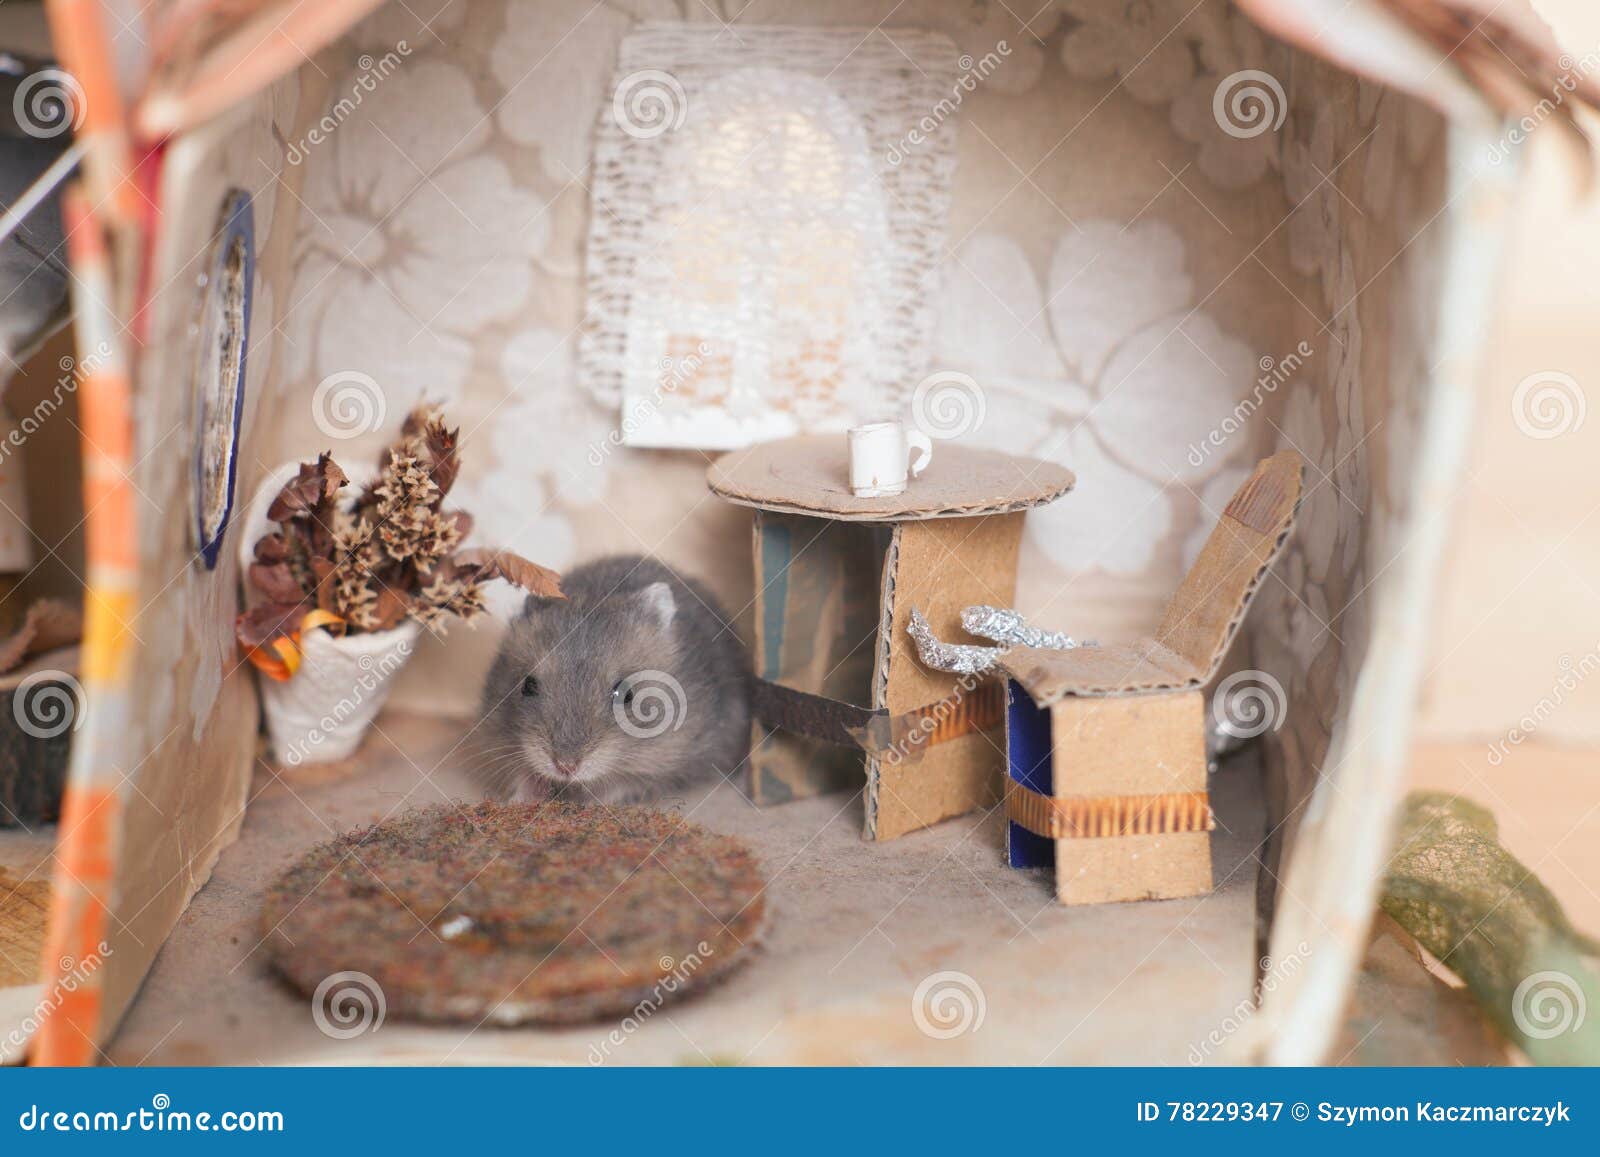 Bad Verval hek Weinig Grappige Hamster Op Het Bed in Klein Veronderstelt Huis Stock  Afbeelding - Image of klein, gouden: 78229347